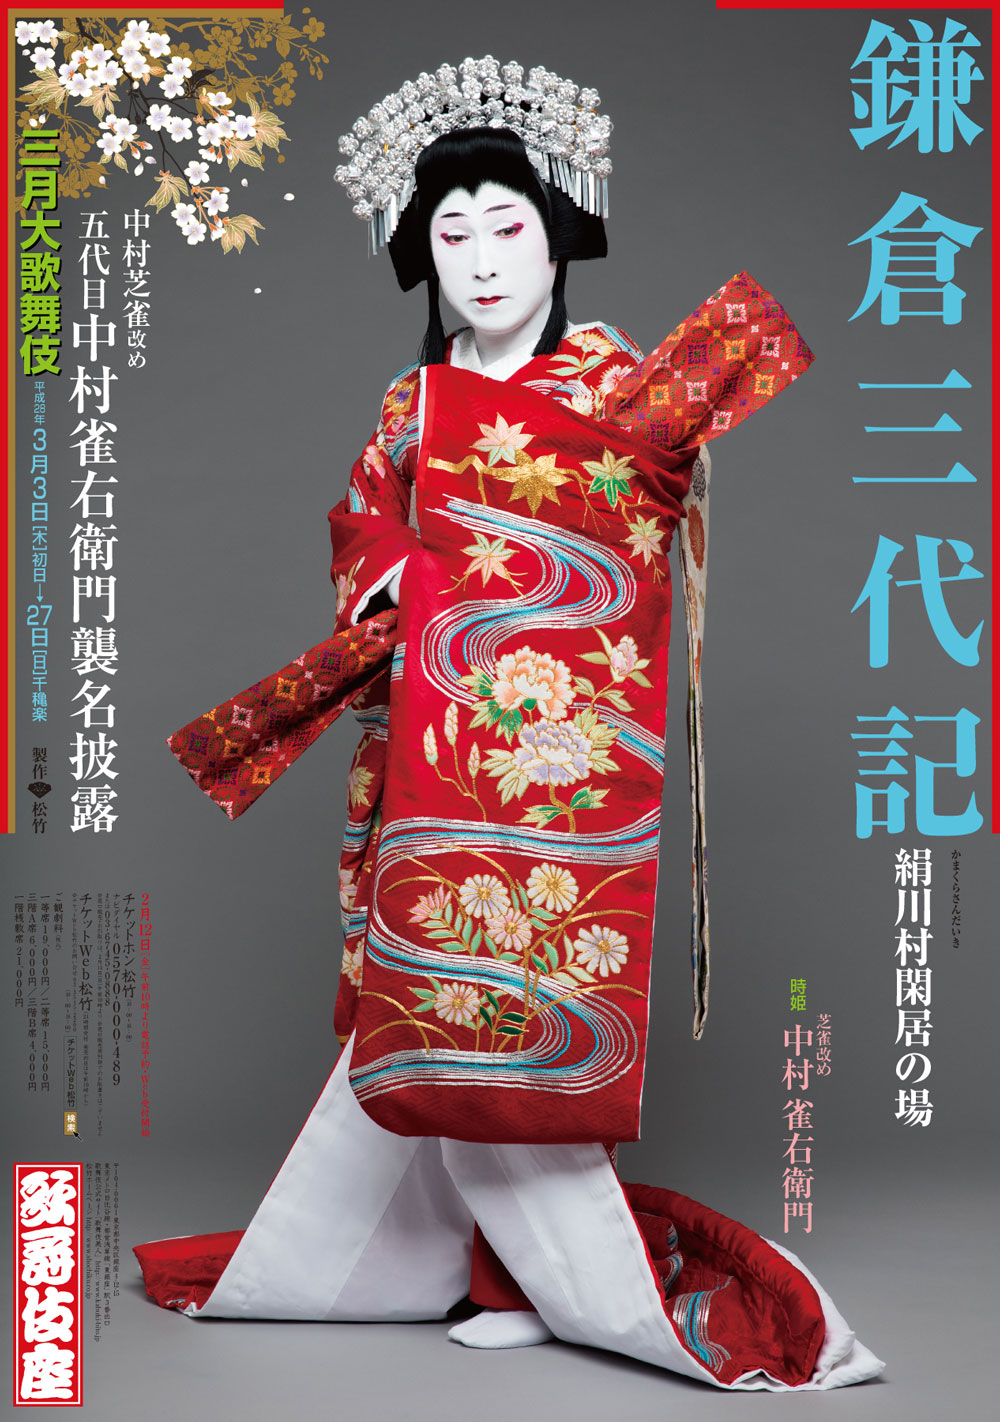 歌舞伎座「三月大歌舞伎」特別ポスター『鎌倉三代記』